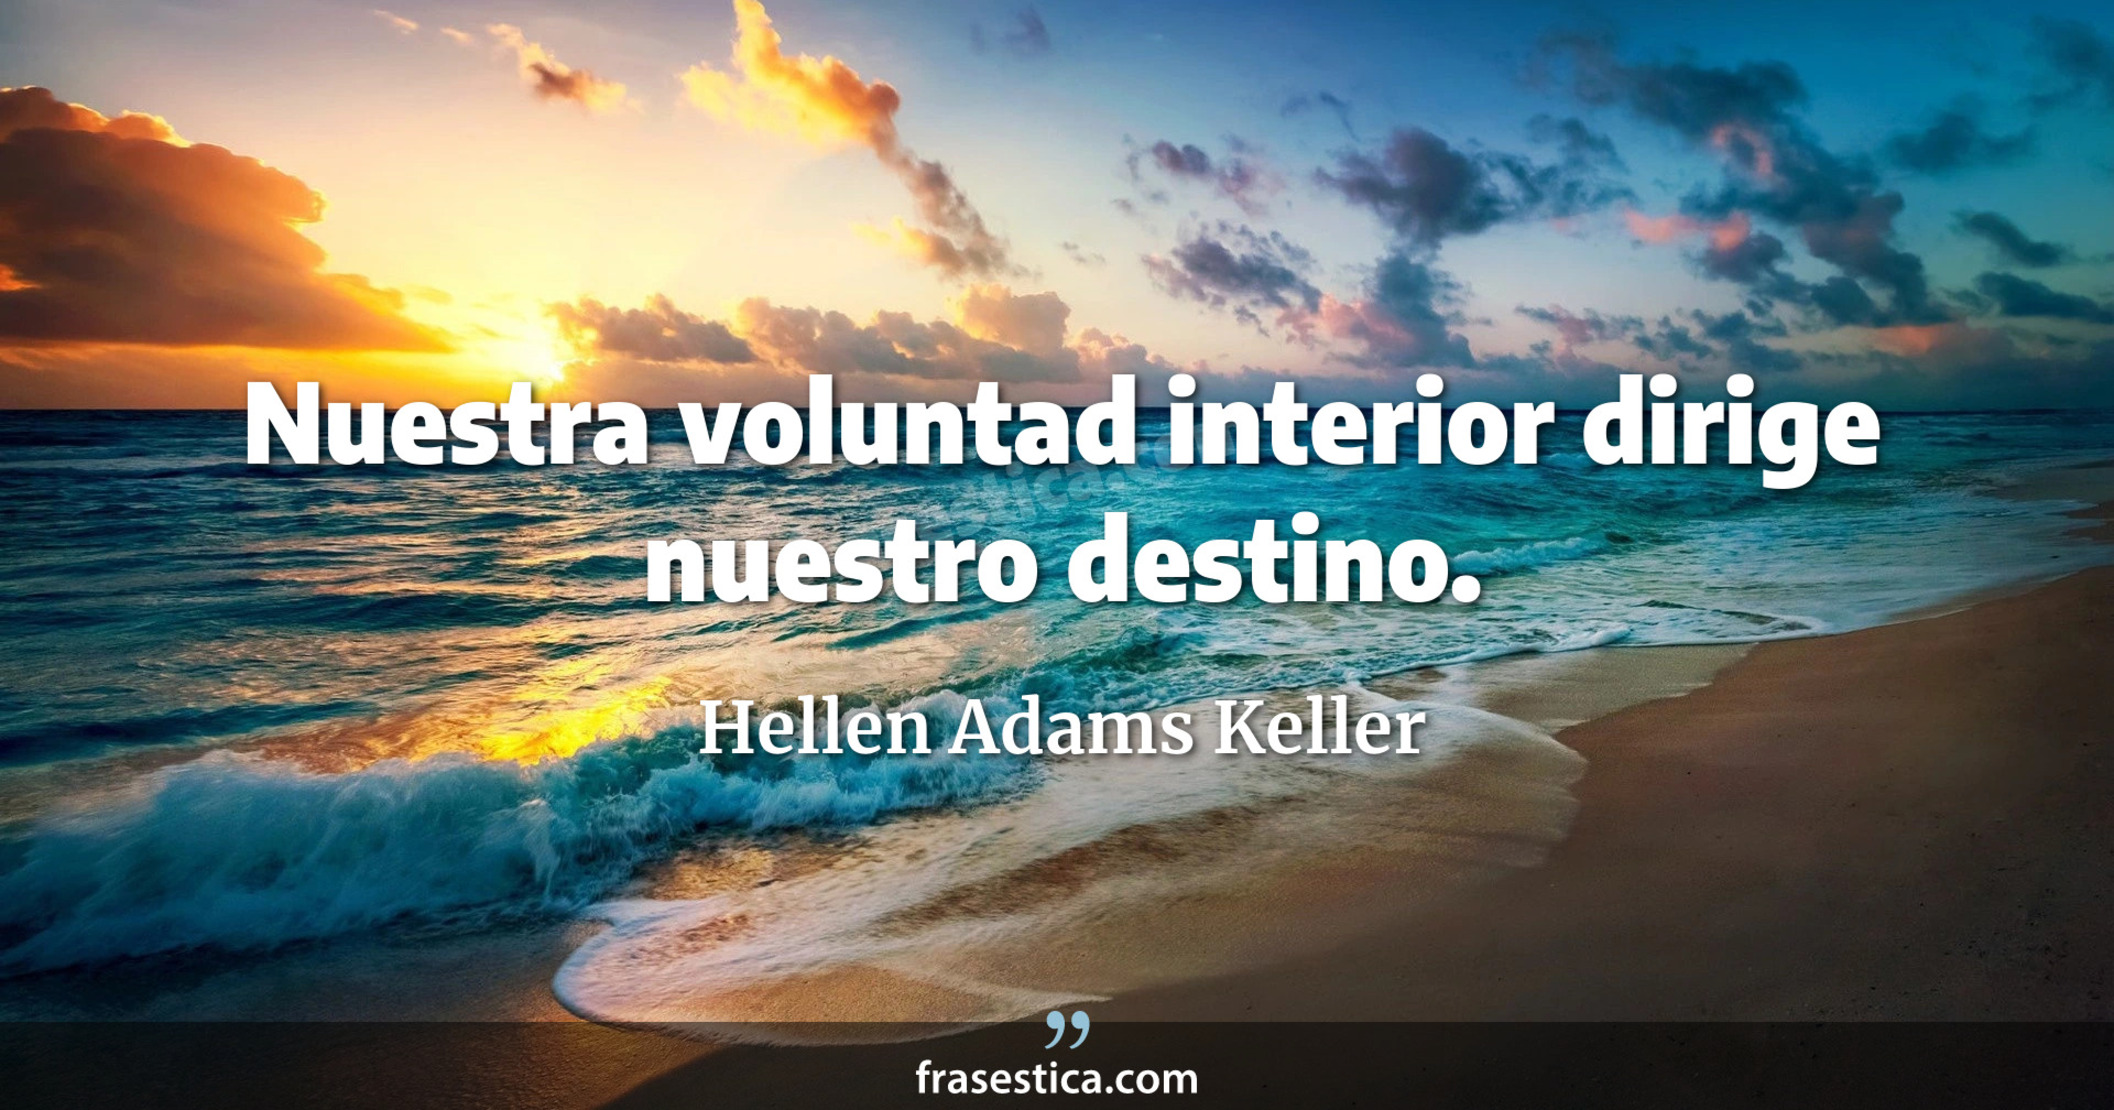 Nuestra voluntad interior dirige nuestro destino. - Hellen Adams Keller